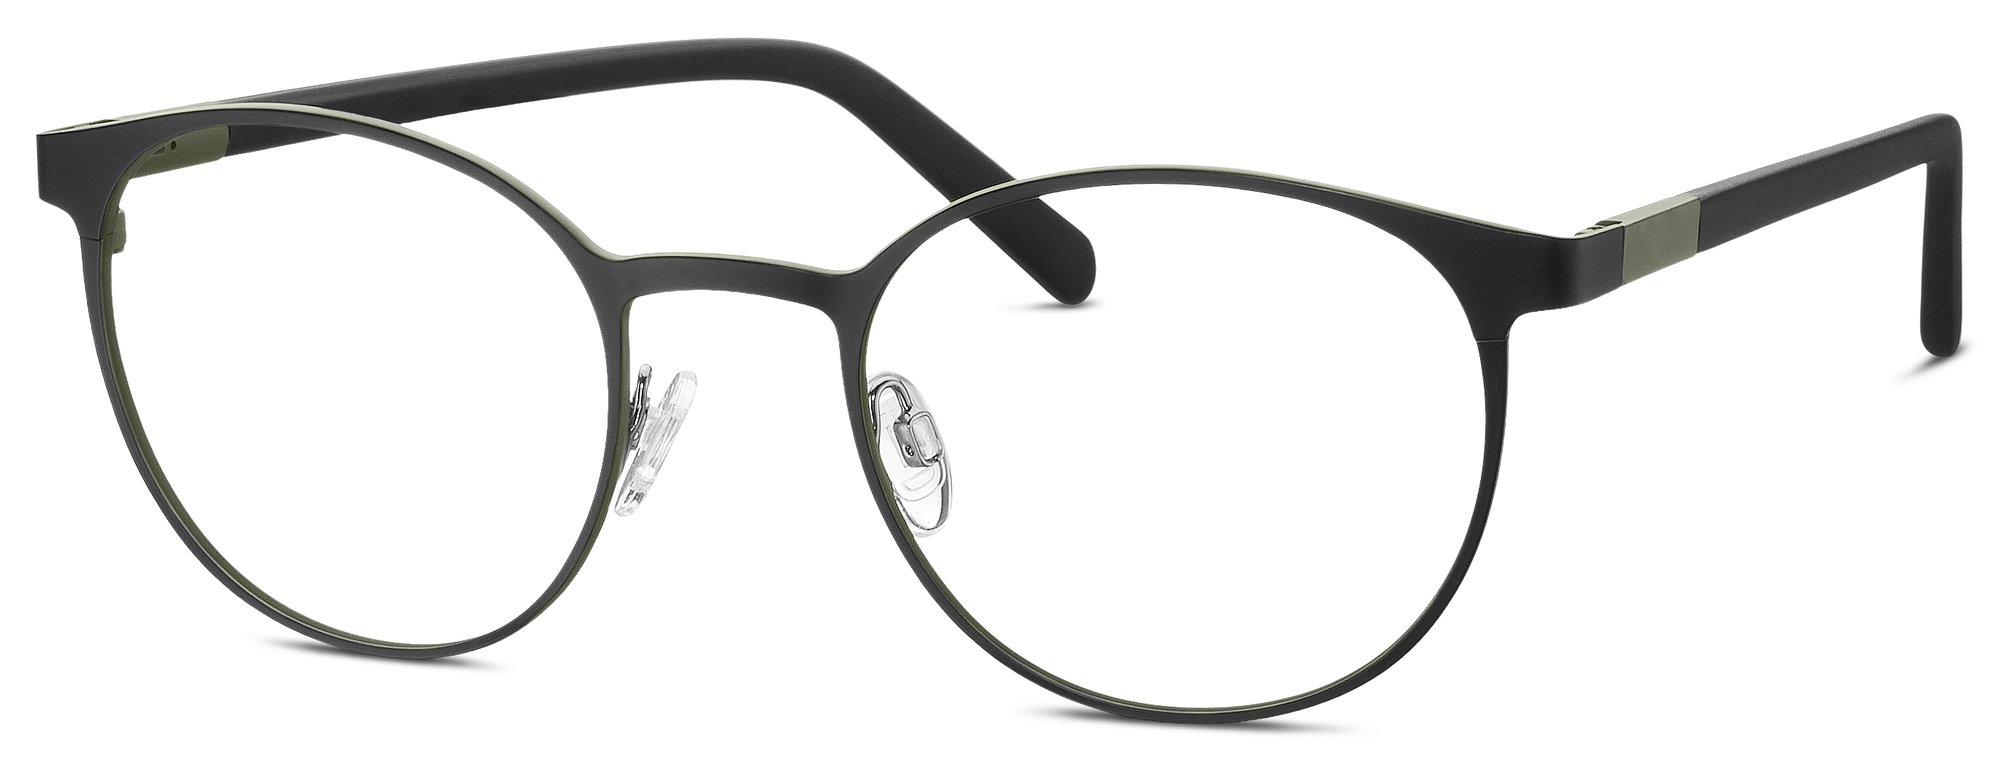 Das Bild zeigt die Korrektionsbrille 862051 10 von der Marke Freigeist in Schwarz.